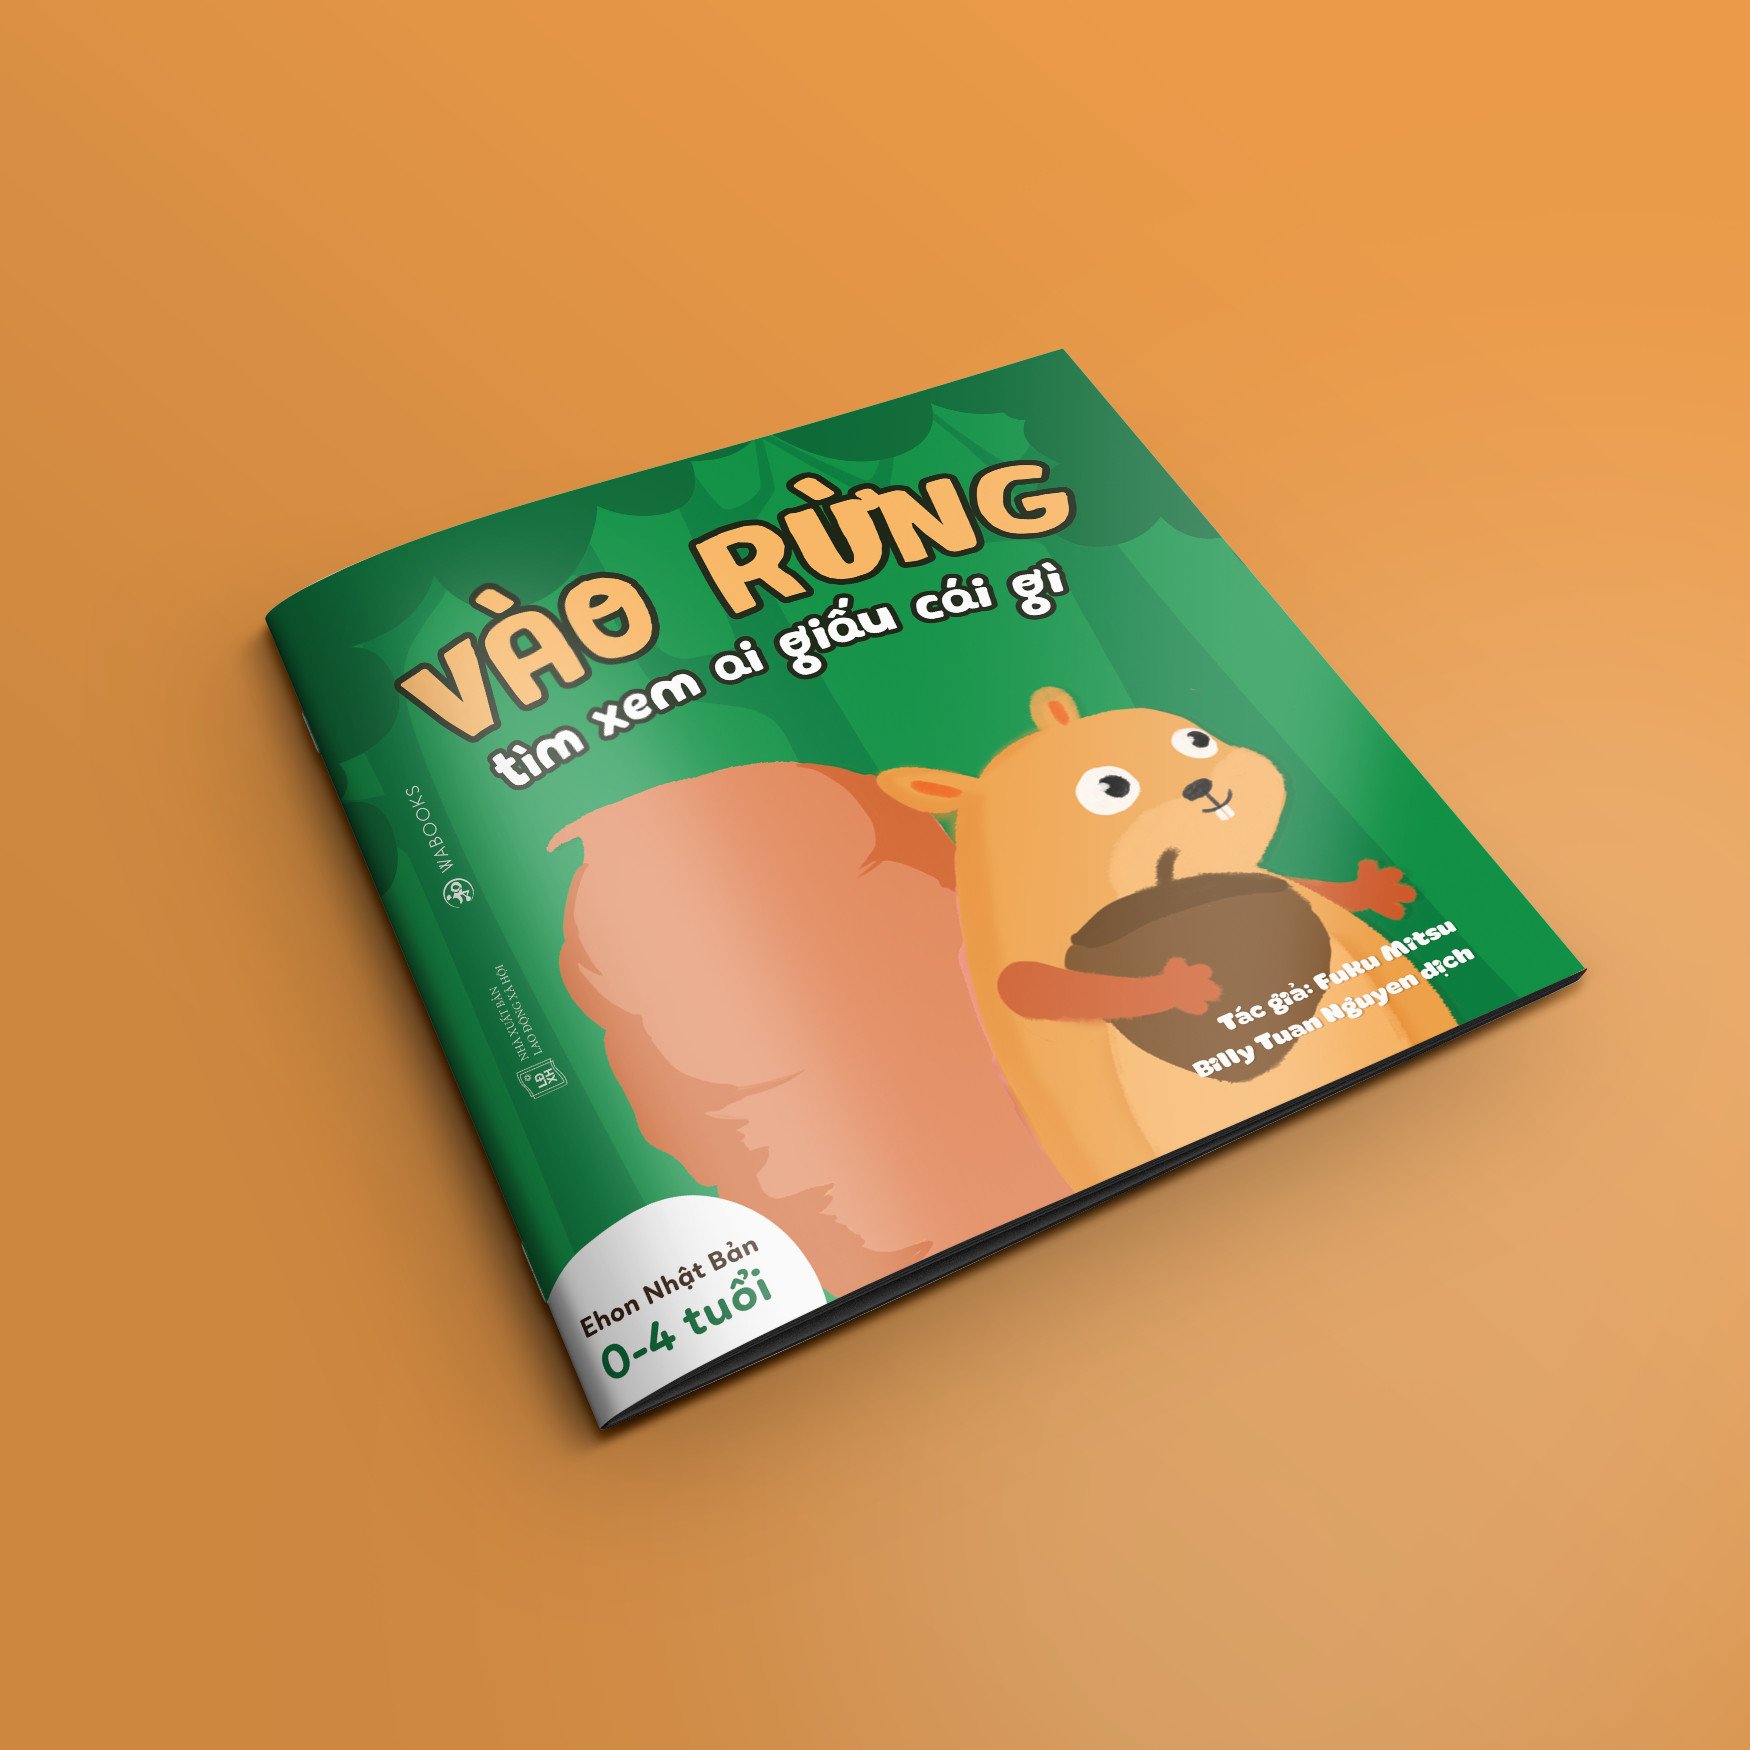 Sách Ehon - Combo 3 cuốn Ai giấu cái gì - Dành cho trẻ từ 0 - 4 tuổi